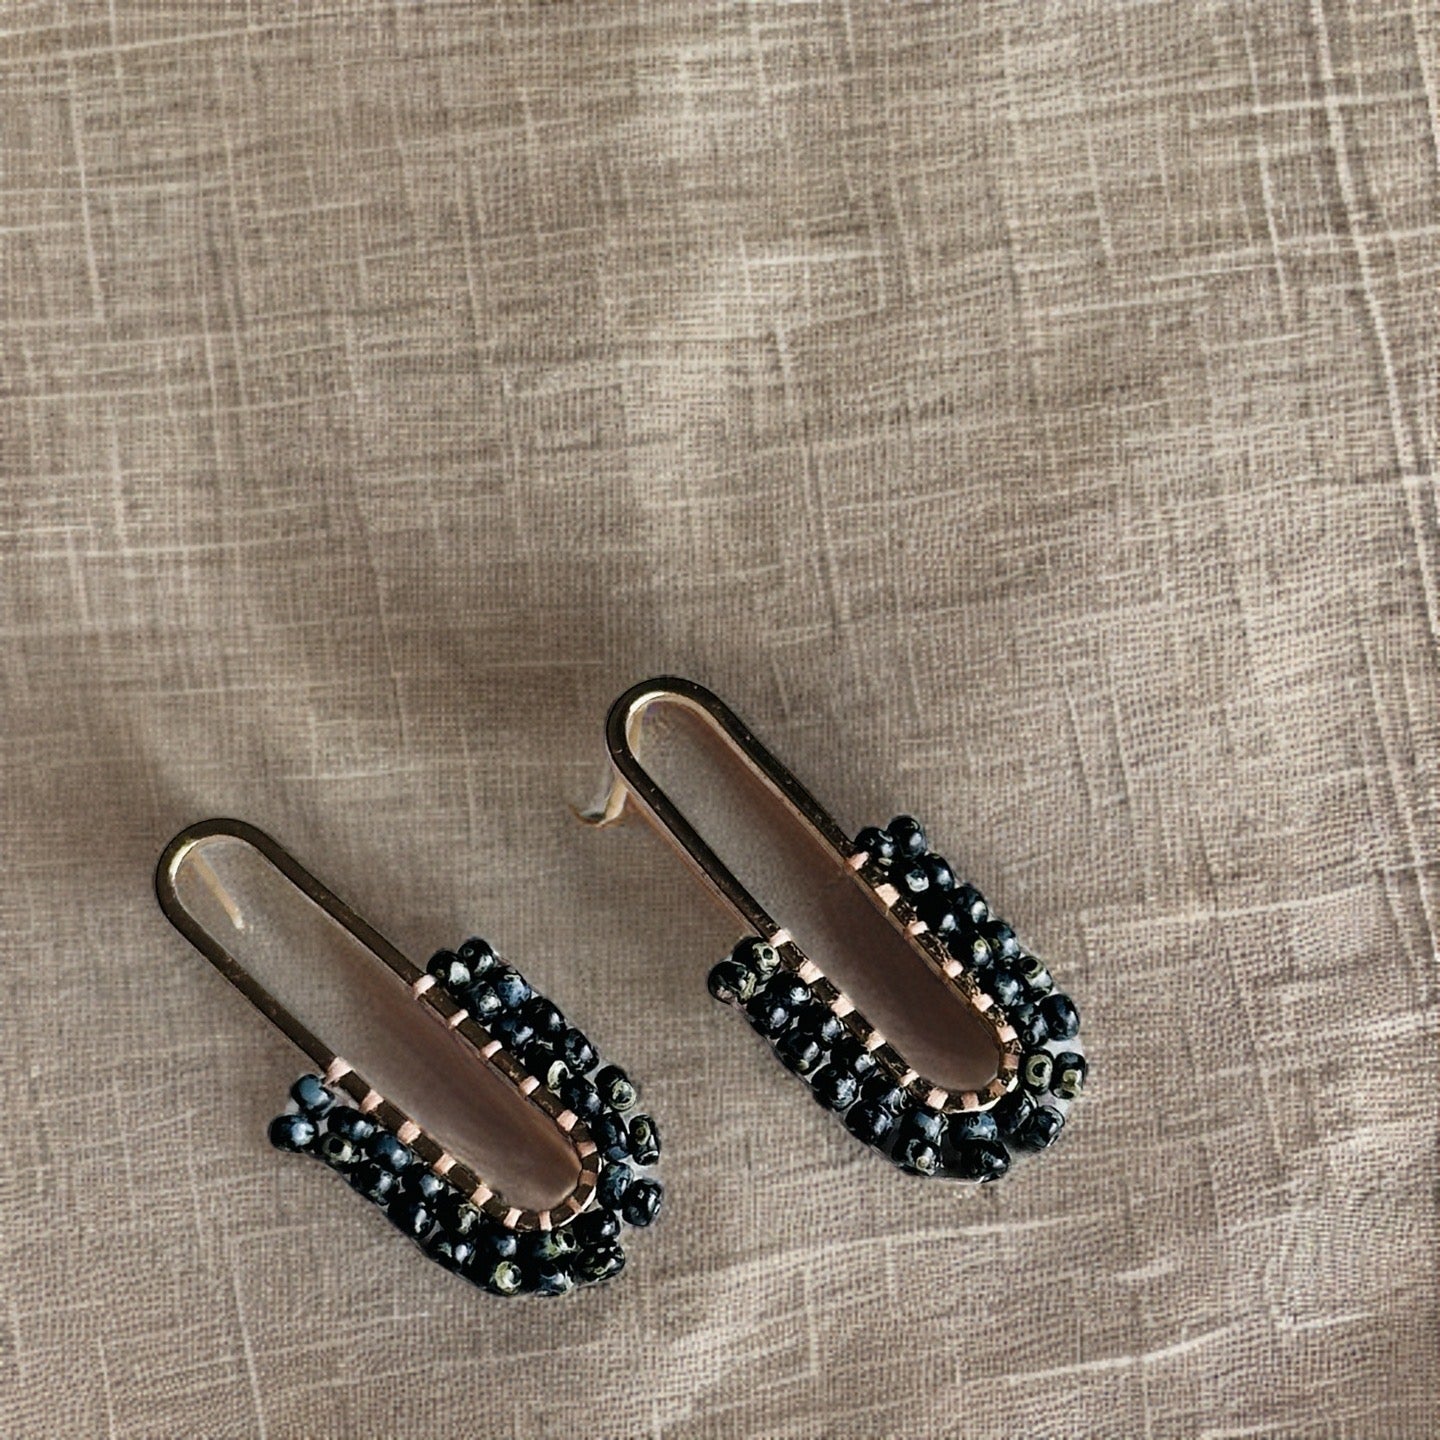 Speckled black beaded earrings